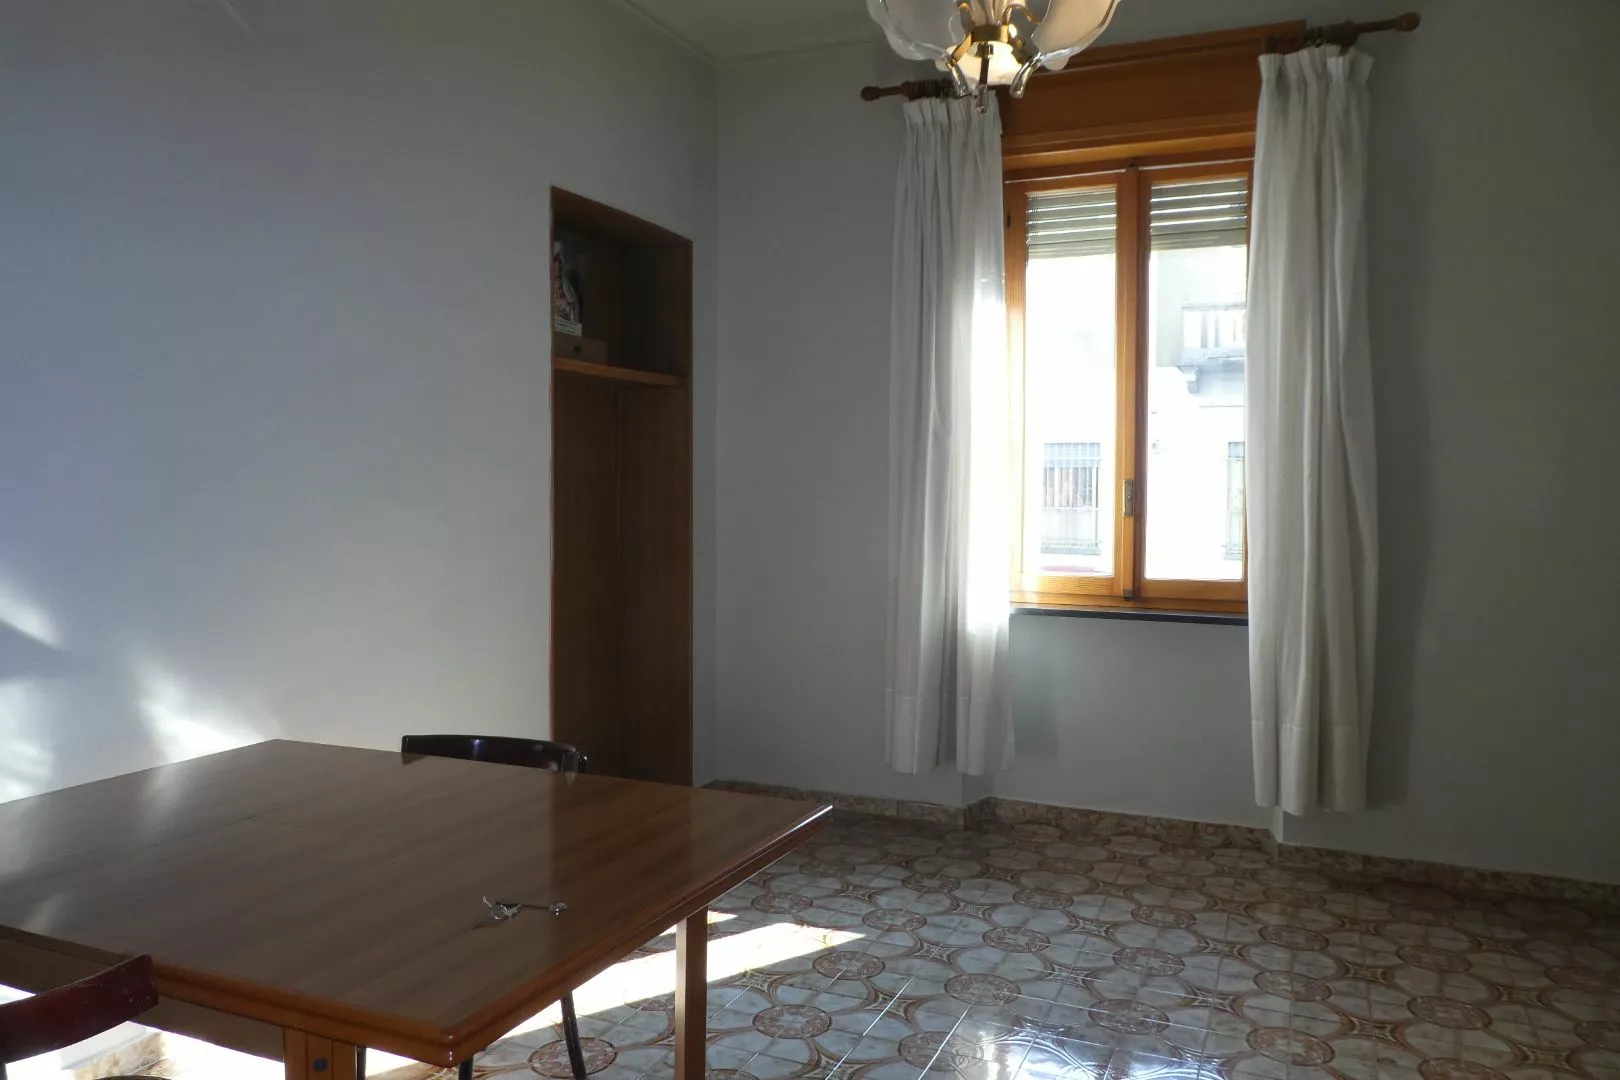 Immagine per Appartamento in Vendita a torino via francesco baracca